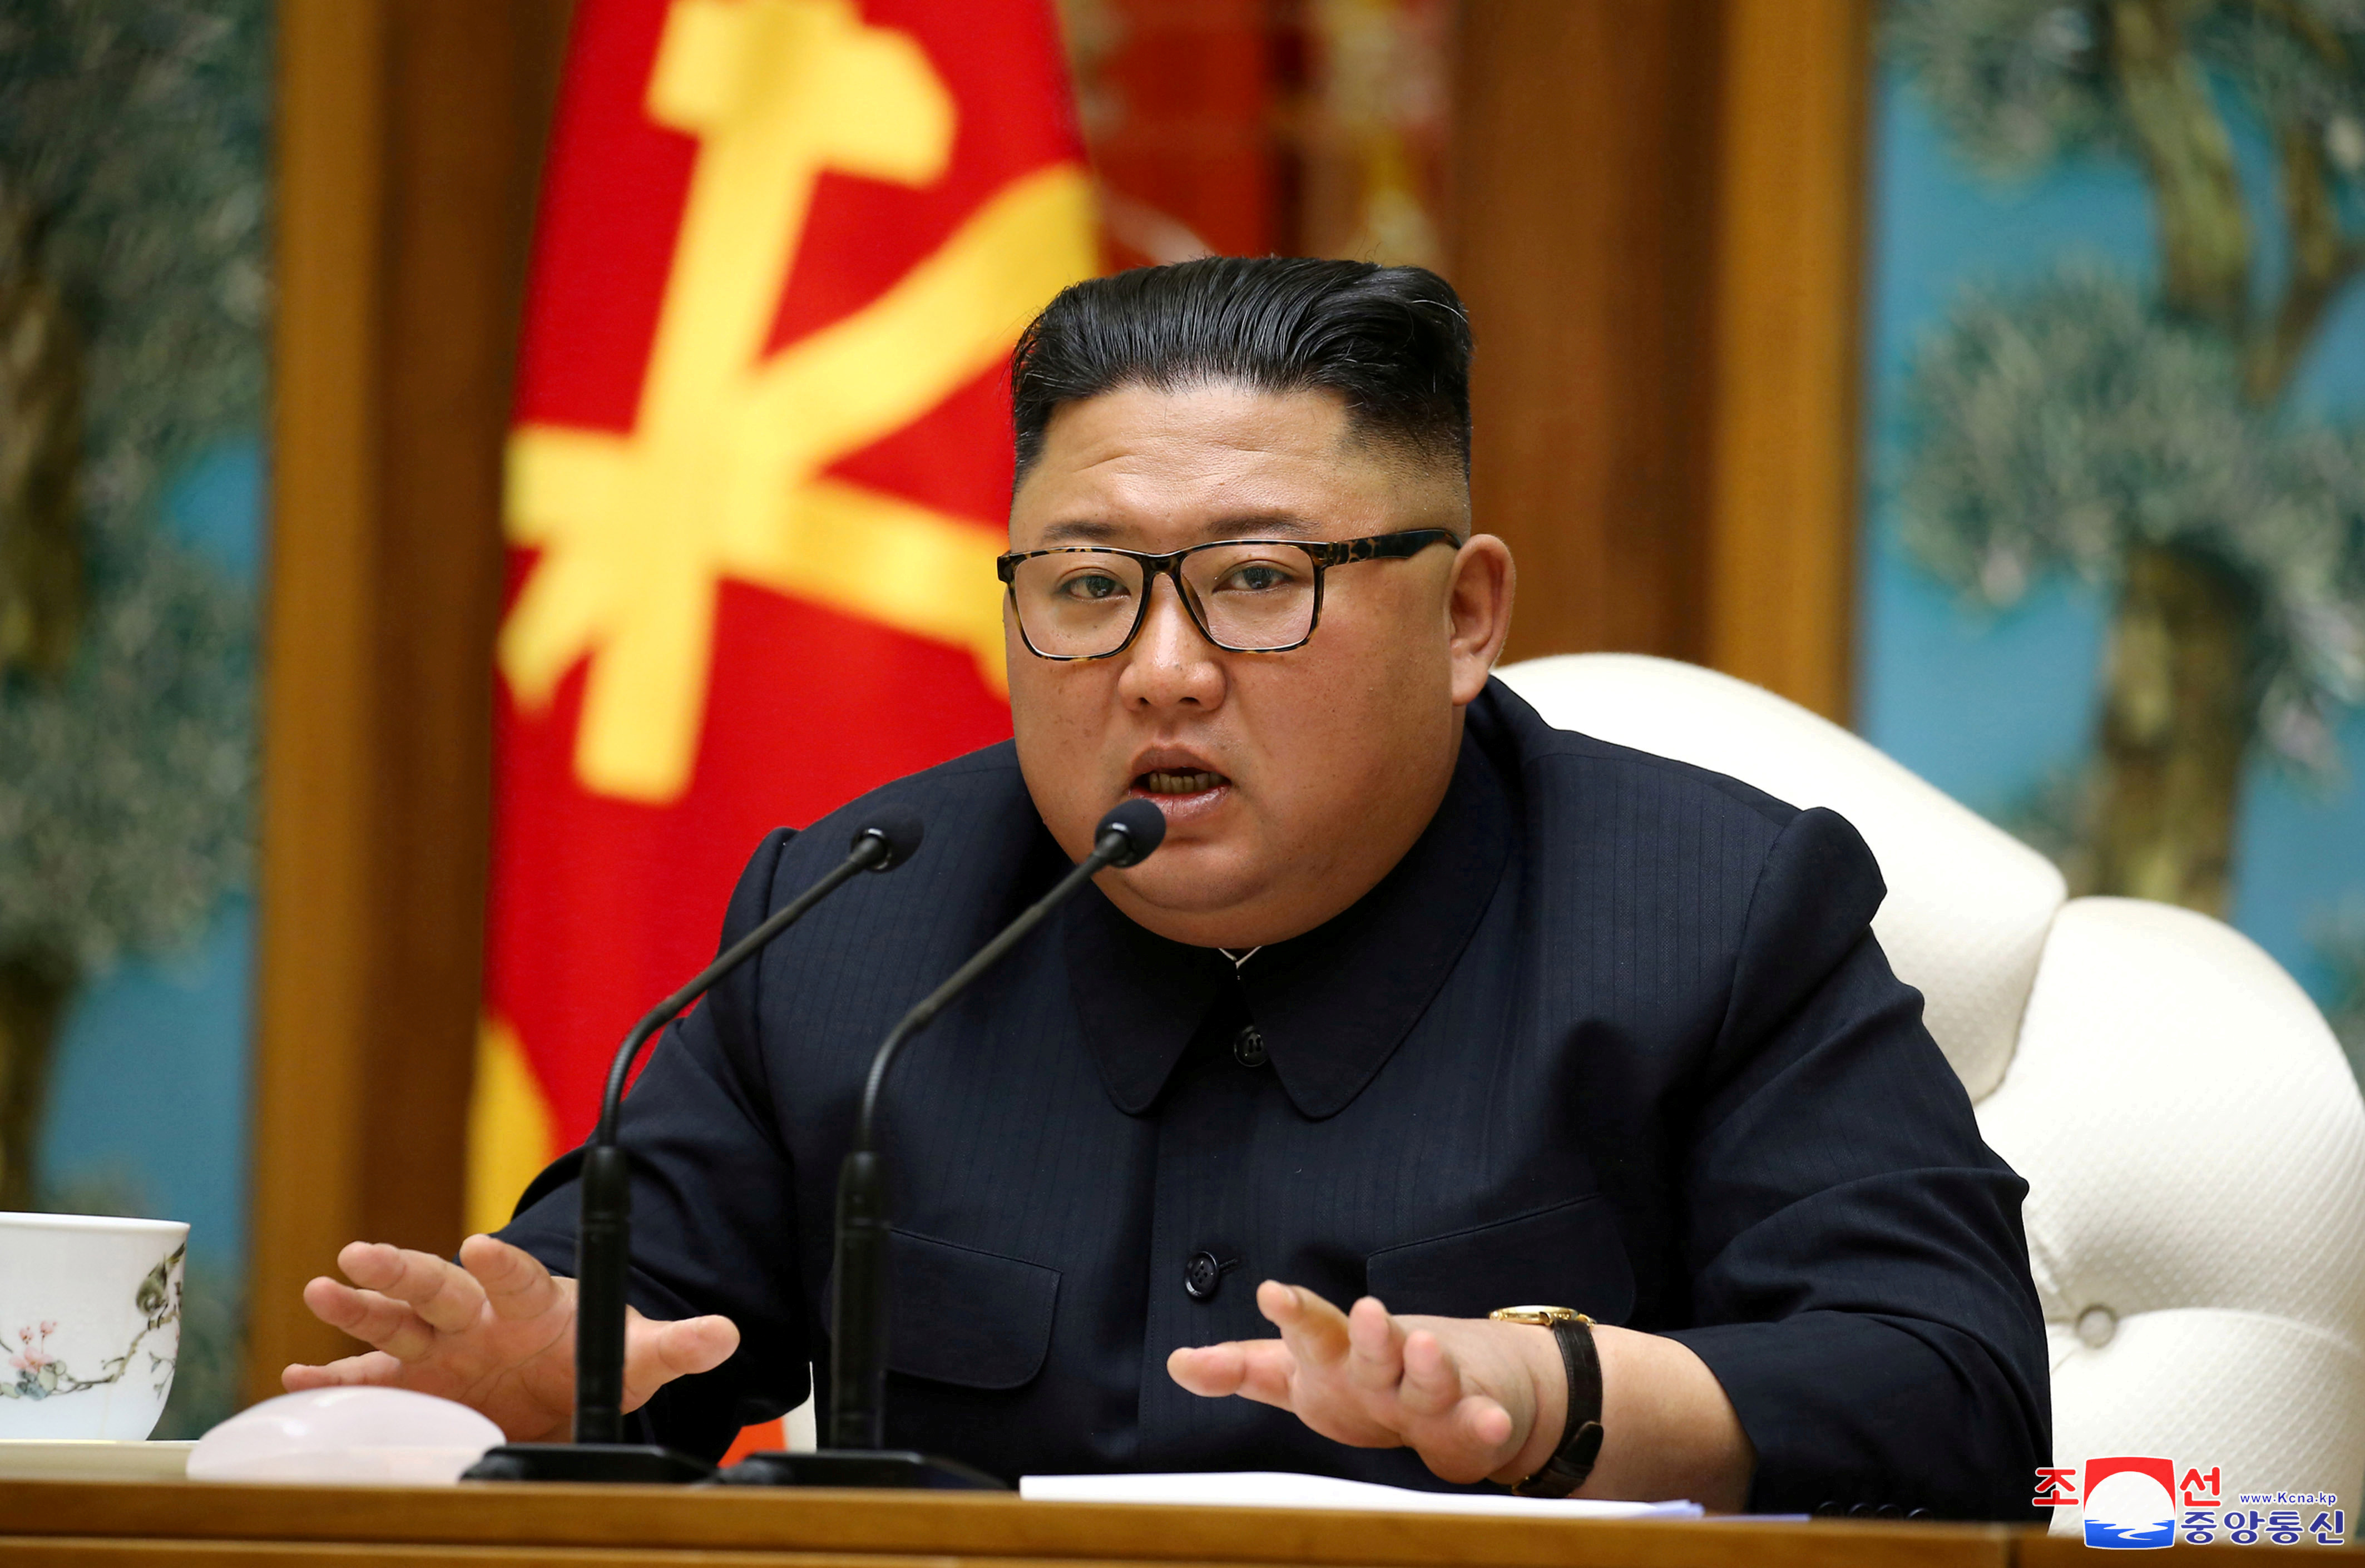 El jefe de la inteligencia de Taiwán afirma que Kim Jong Un está “enfermo”